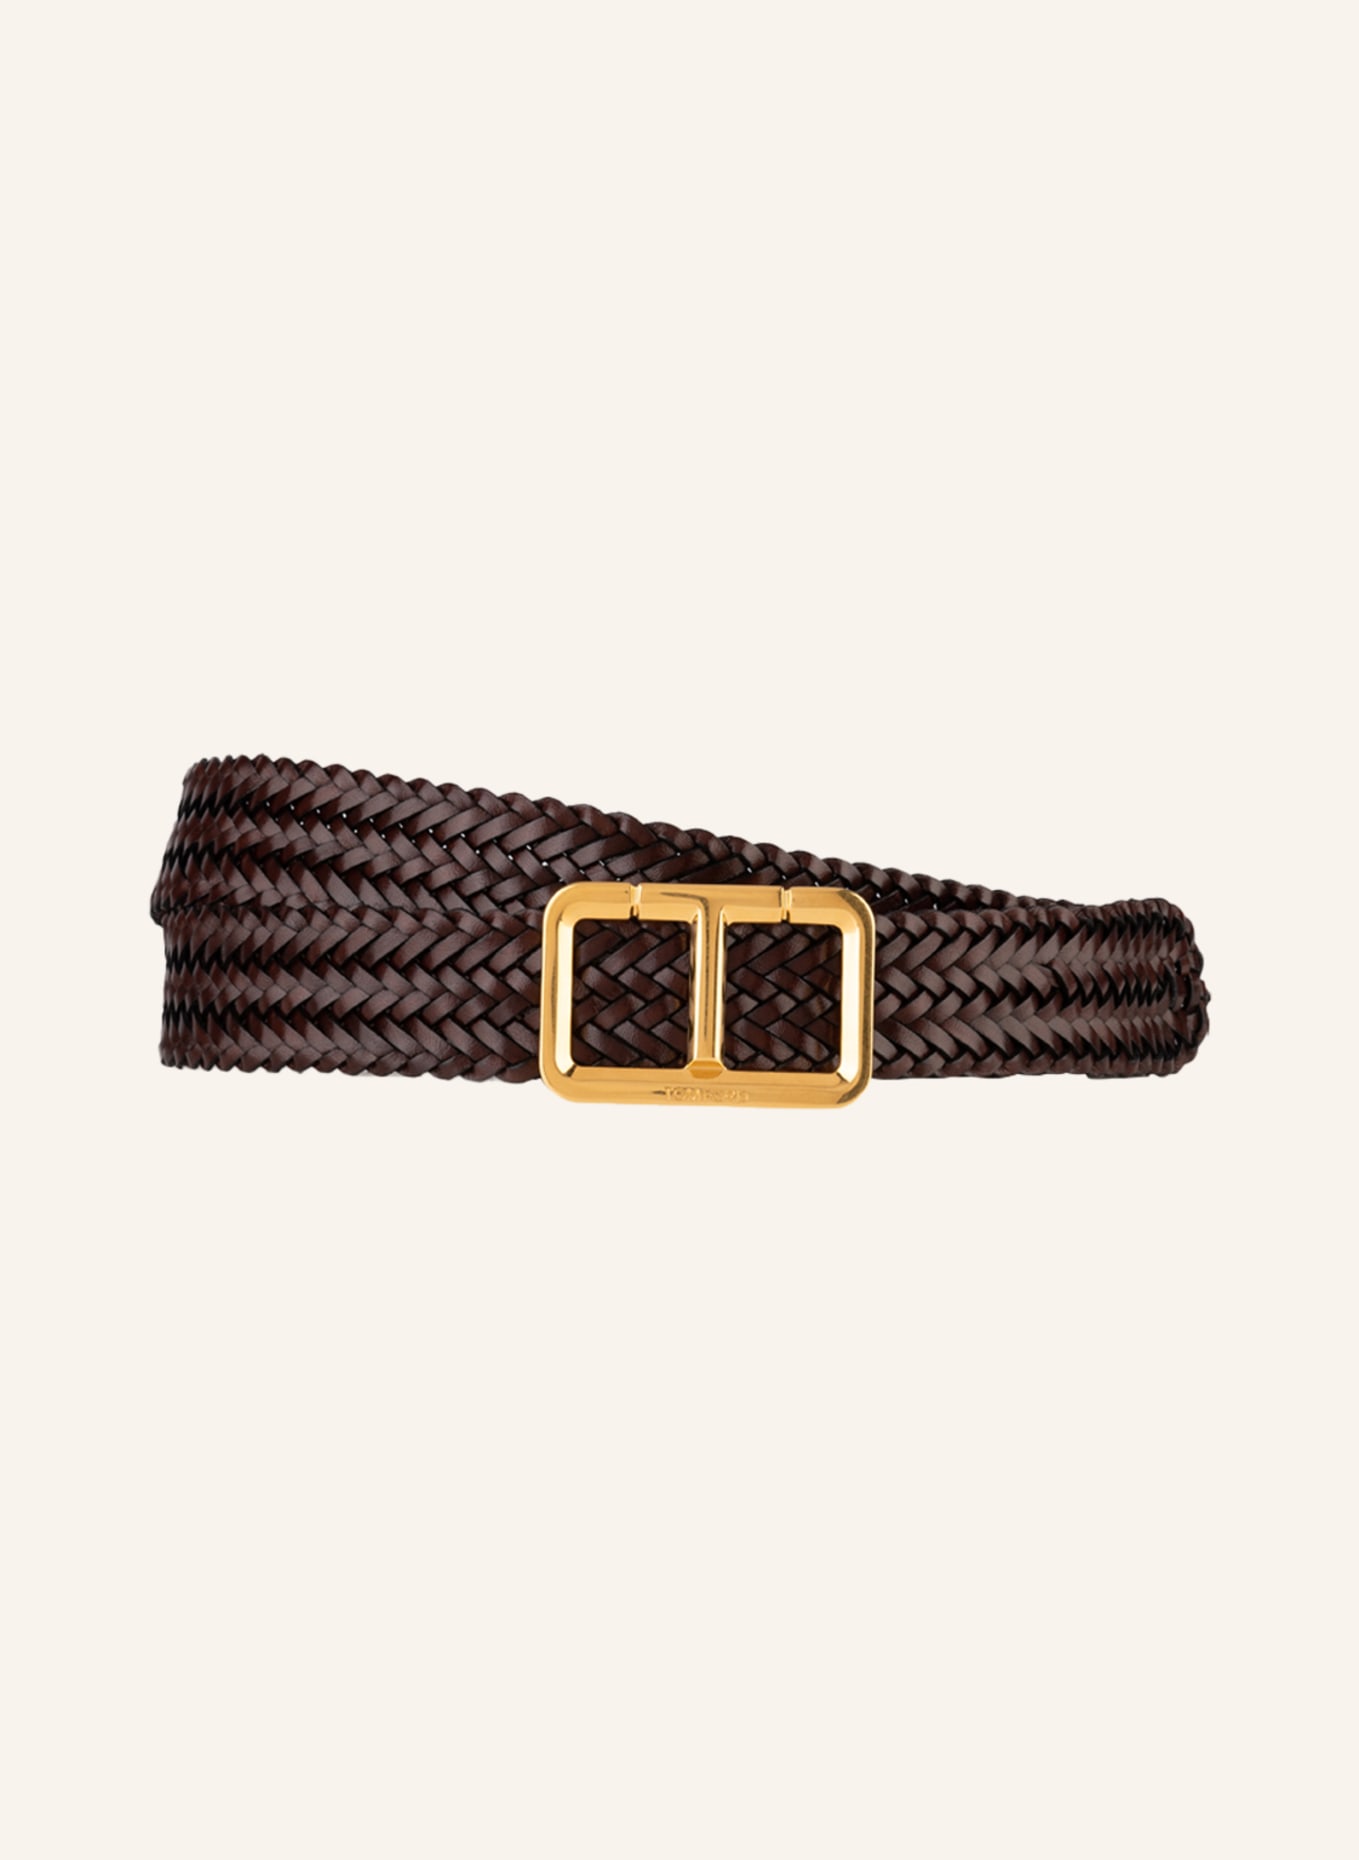 TOM FORD Leather belt, Color: DARK BROWN (Image 1)